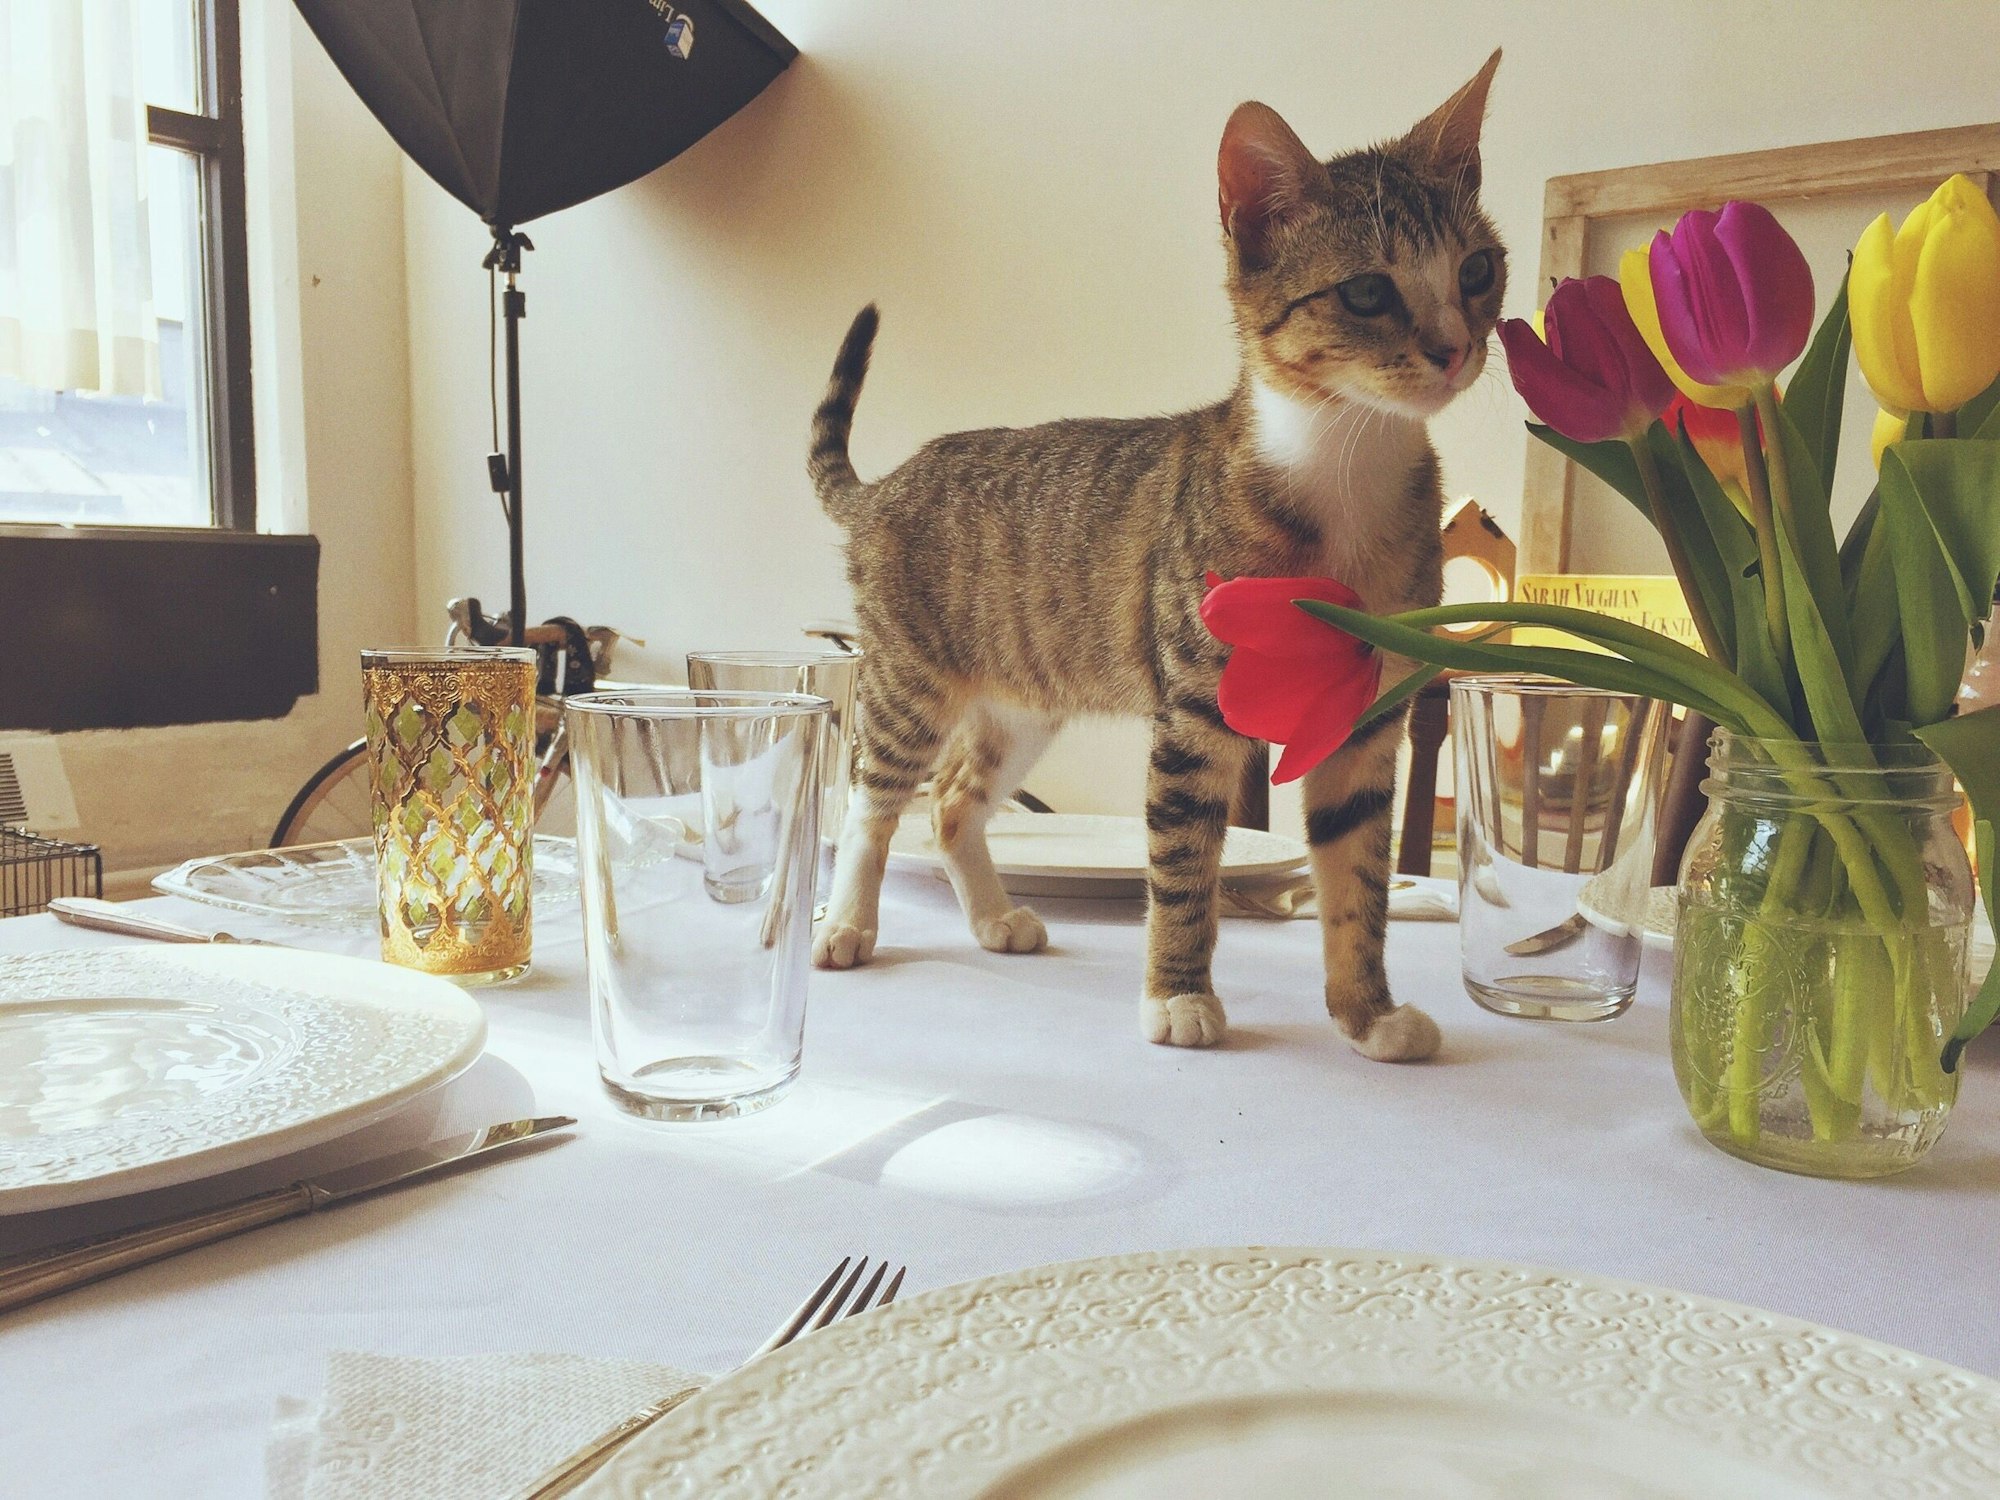 Finden Sie die Fehler! Zuerst einmal gehört die Katze (und sei sie noch so niedlich) nicht auf den Tisch. Zum Zweiten sollten Tulpen außerhalb der Reichweite von Tieren stehen, sie sind für diese nämlich schwach giftig. Und zum Dritten stehen die Tulpen in einer etwas zu niedrigen Vase. Obwohl das Einmachglas zugegebenermaßen hübsch aussieht.